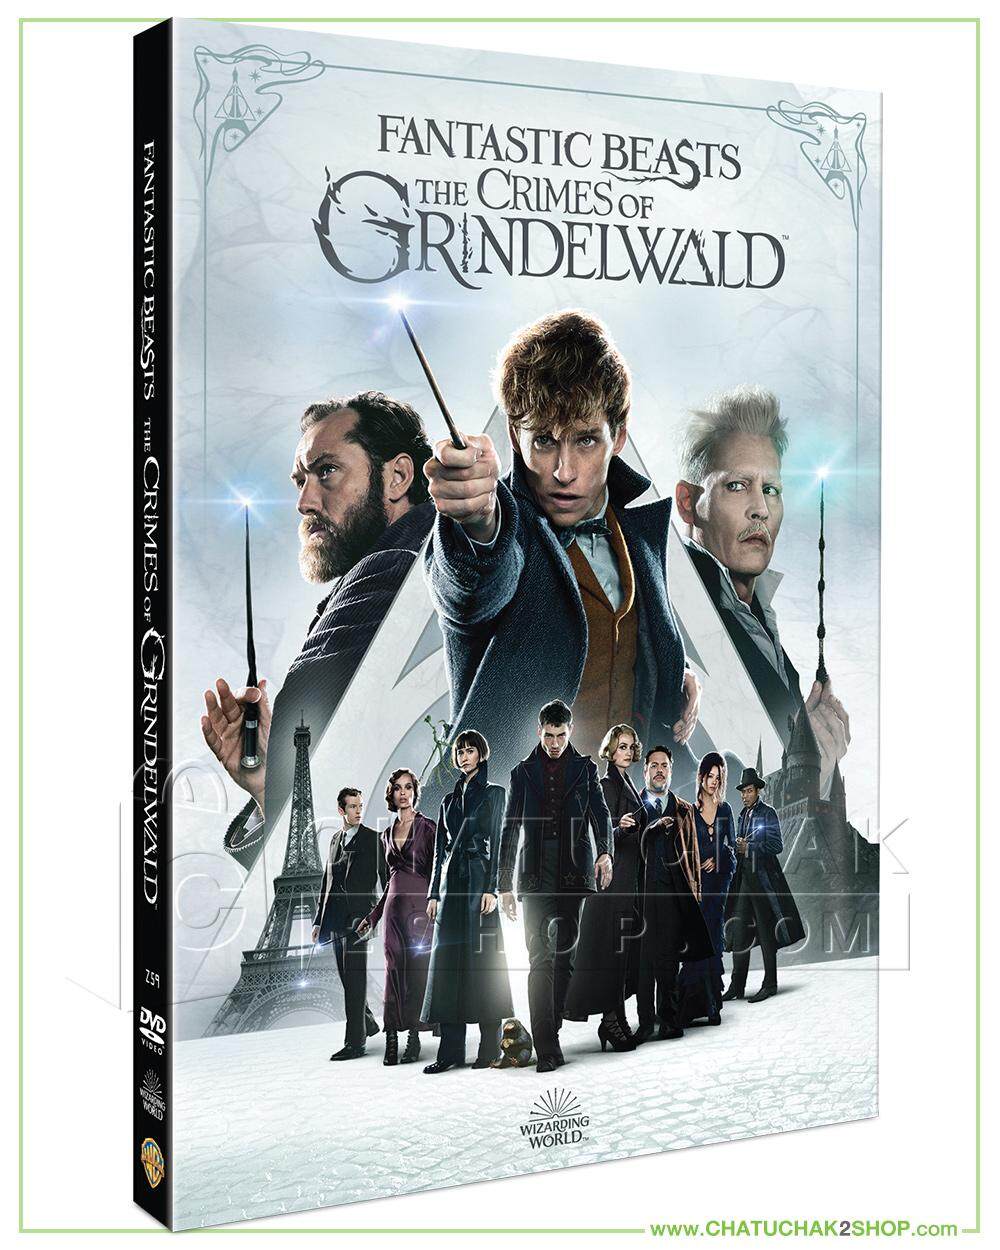 สัตว์มหัศจรรย์- อาชญากรรมของกรินเดลวัลด์ ดีวีดี / Fantastic Beasts: The Crimes of Grindelwald DVD